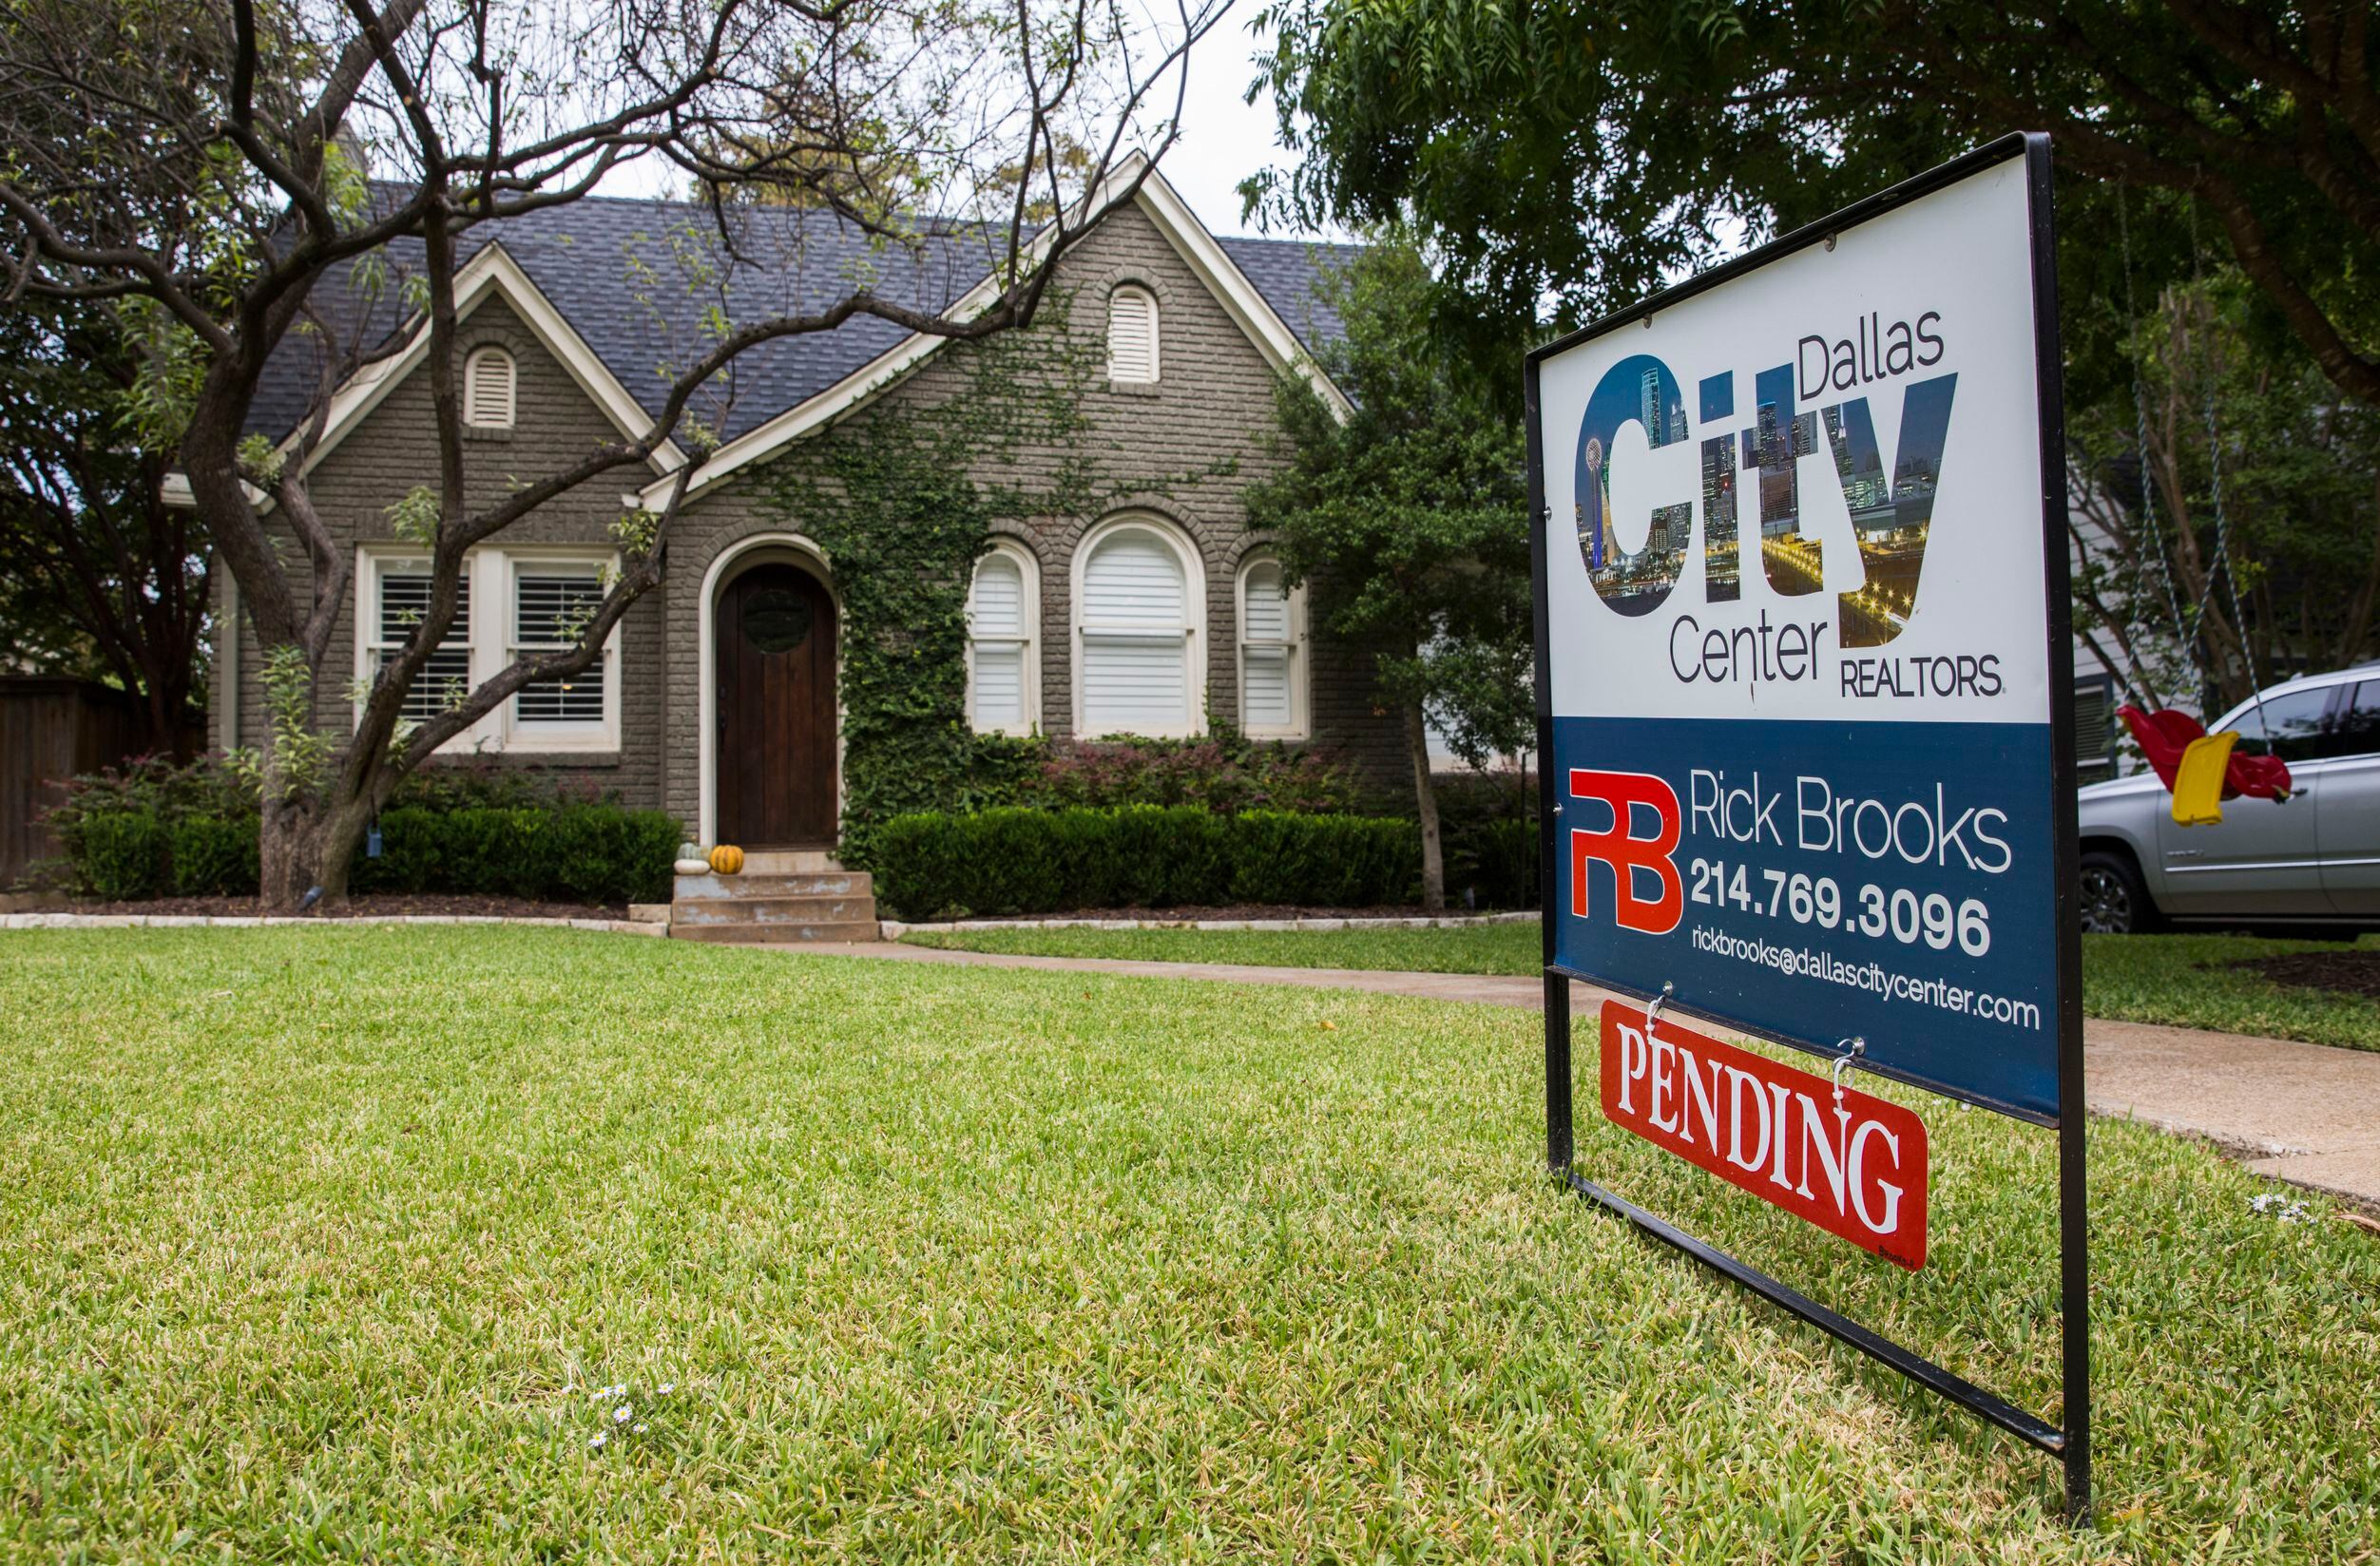 Texas entre los mejores estados para comprar casa por primera vez: Sepa por qué